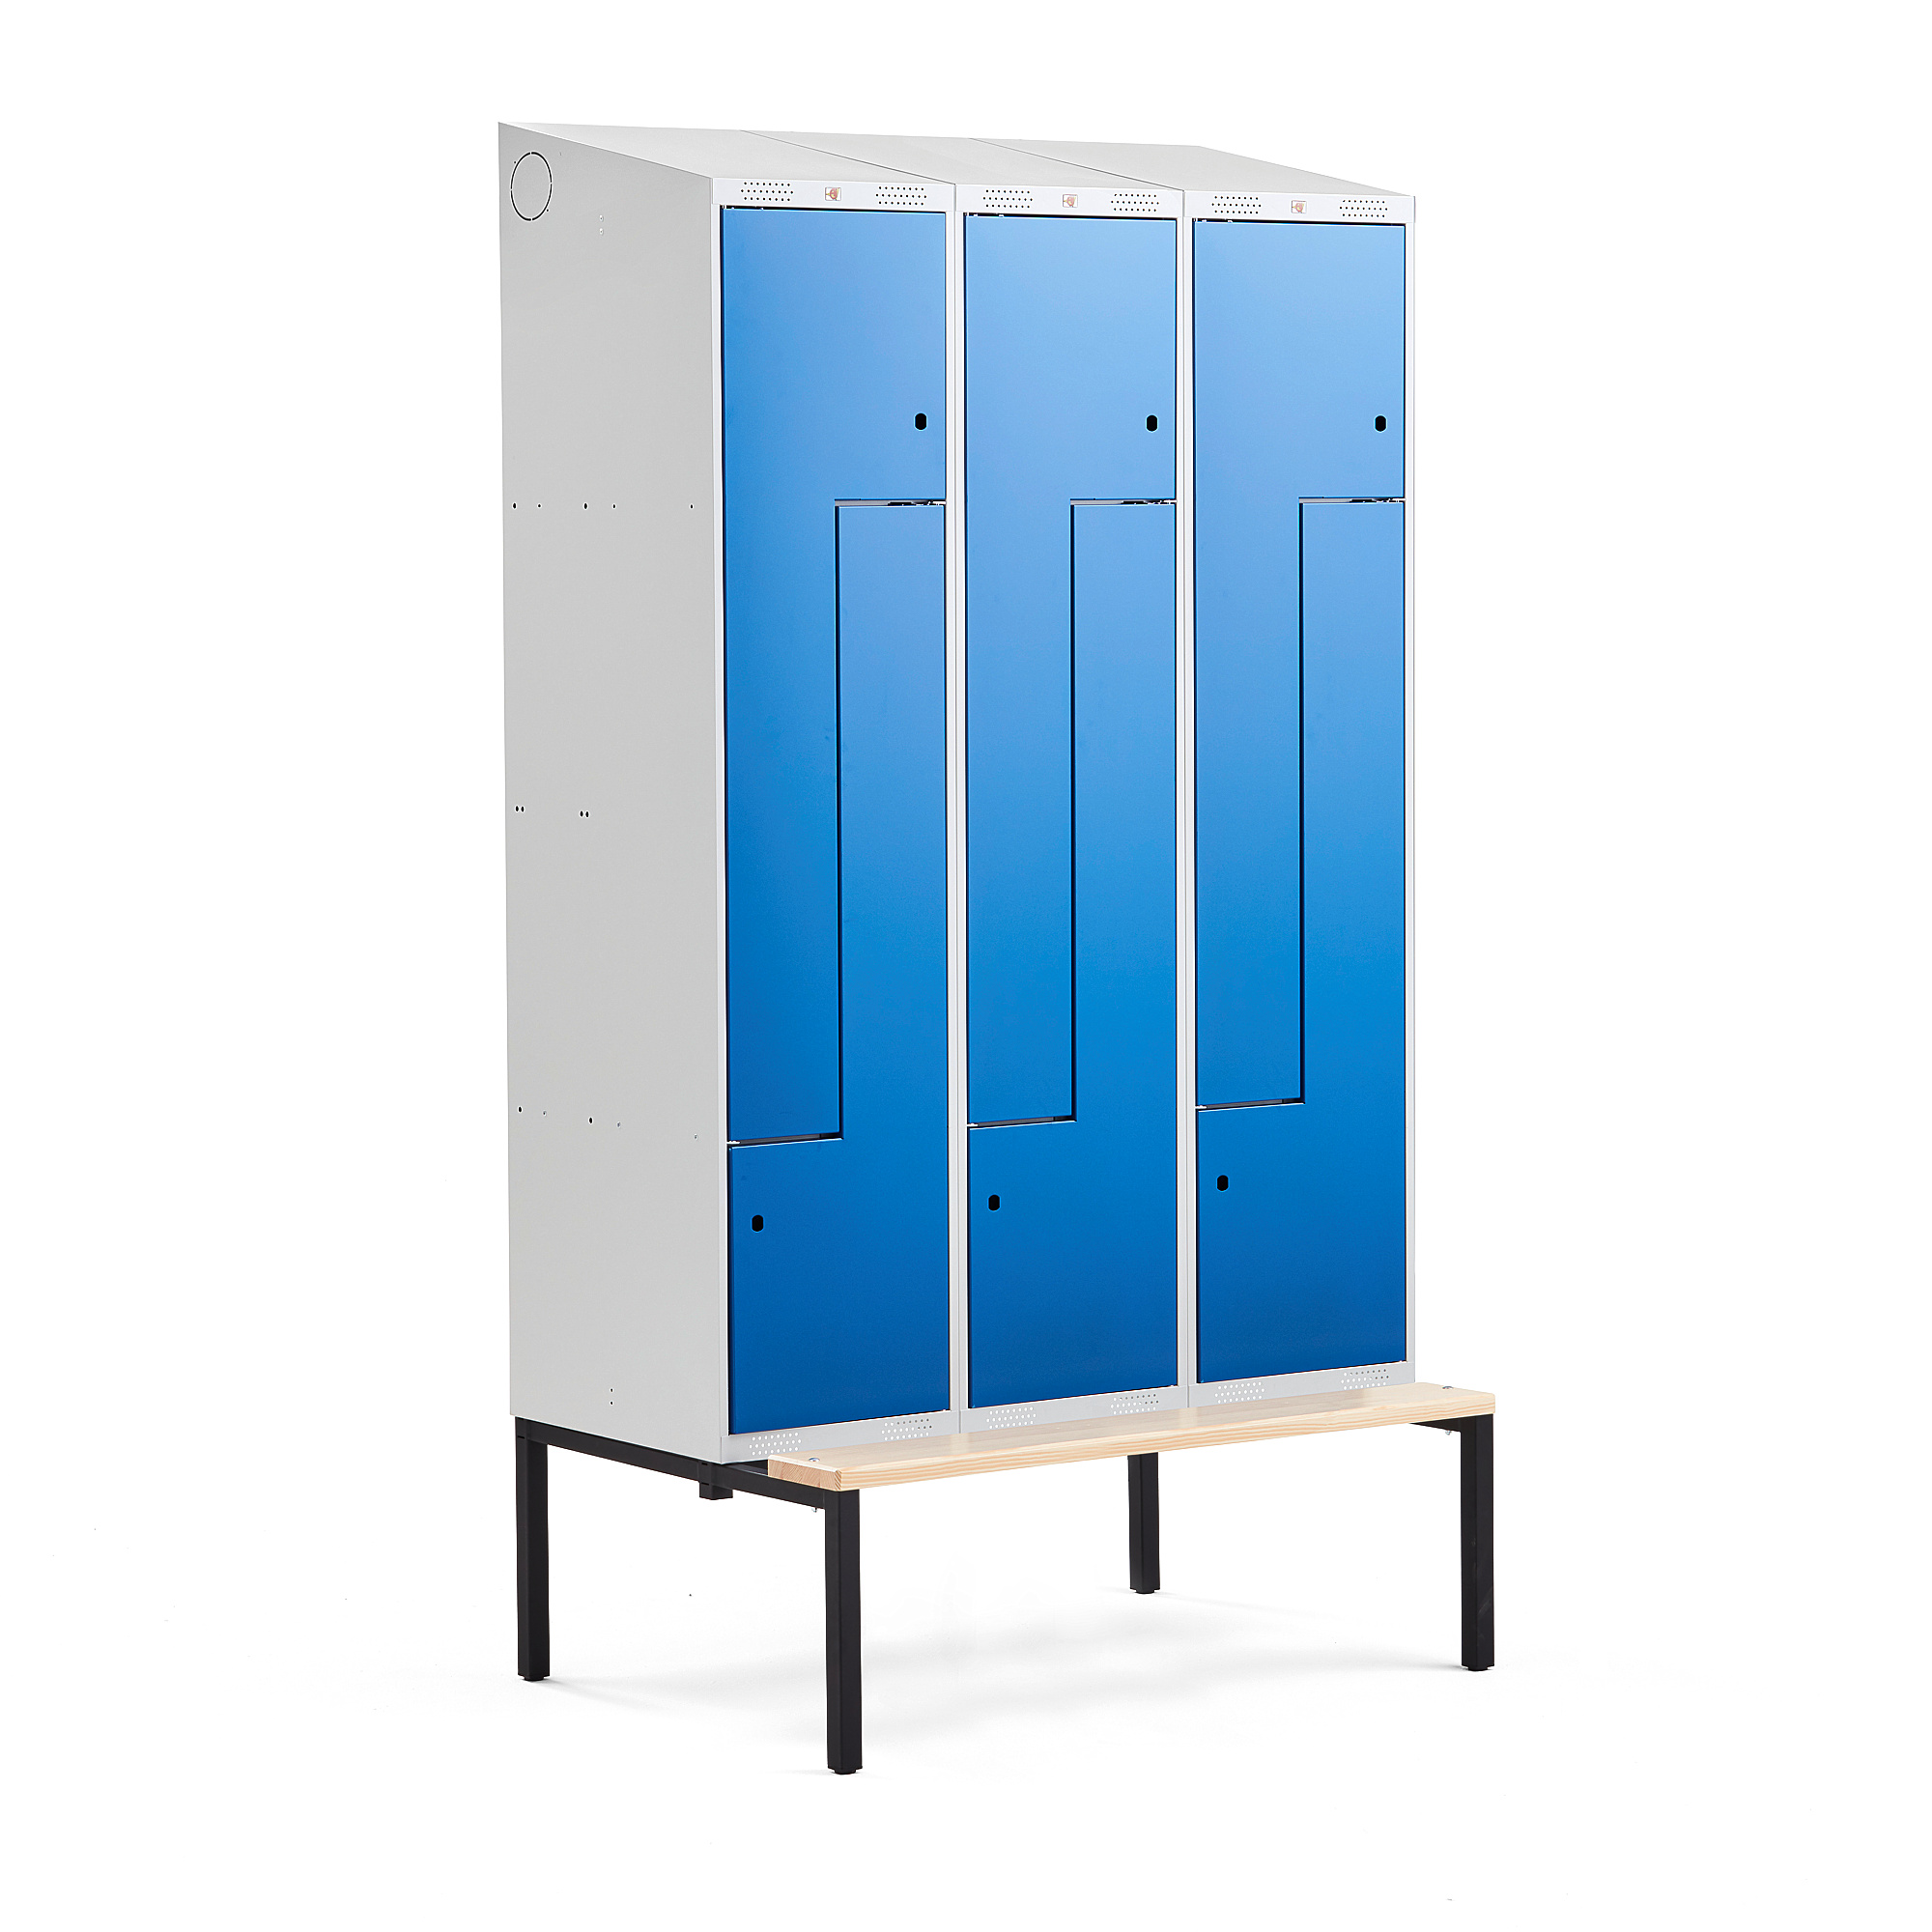 Šatní skříňka CLASSIC Z, šikmá střecha, s lavicí, 3 sekce, 6 dveří, 2290x1200x550 mm, modré dveře